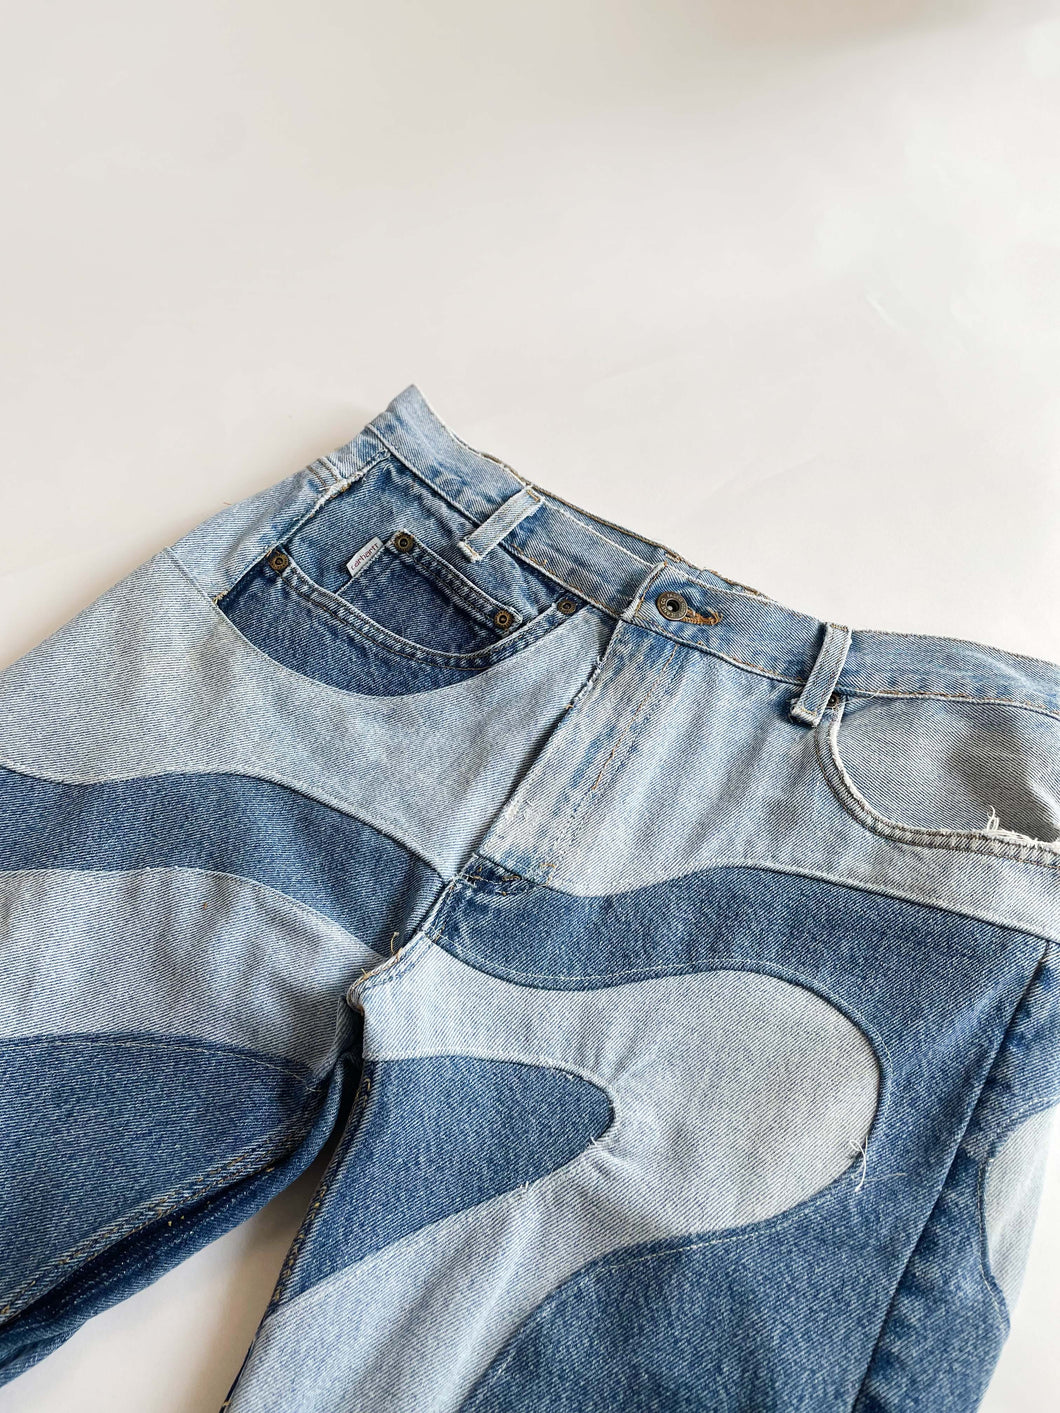 Reworked Denim swirl Jeans